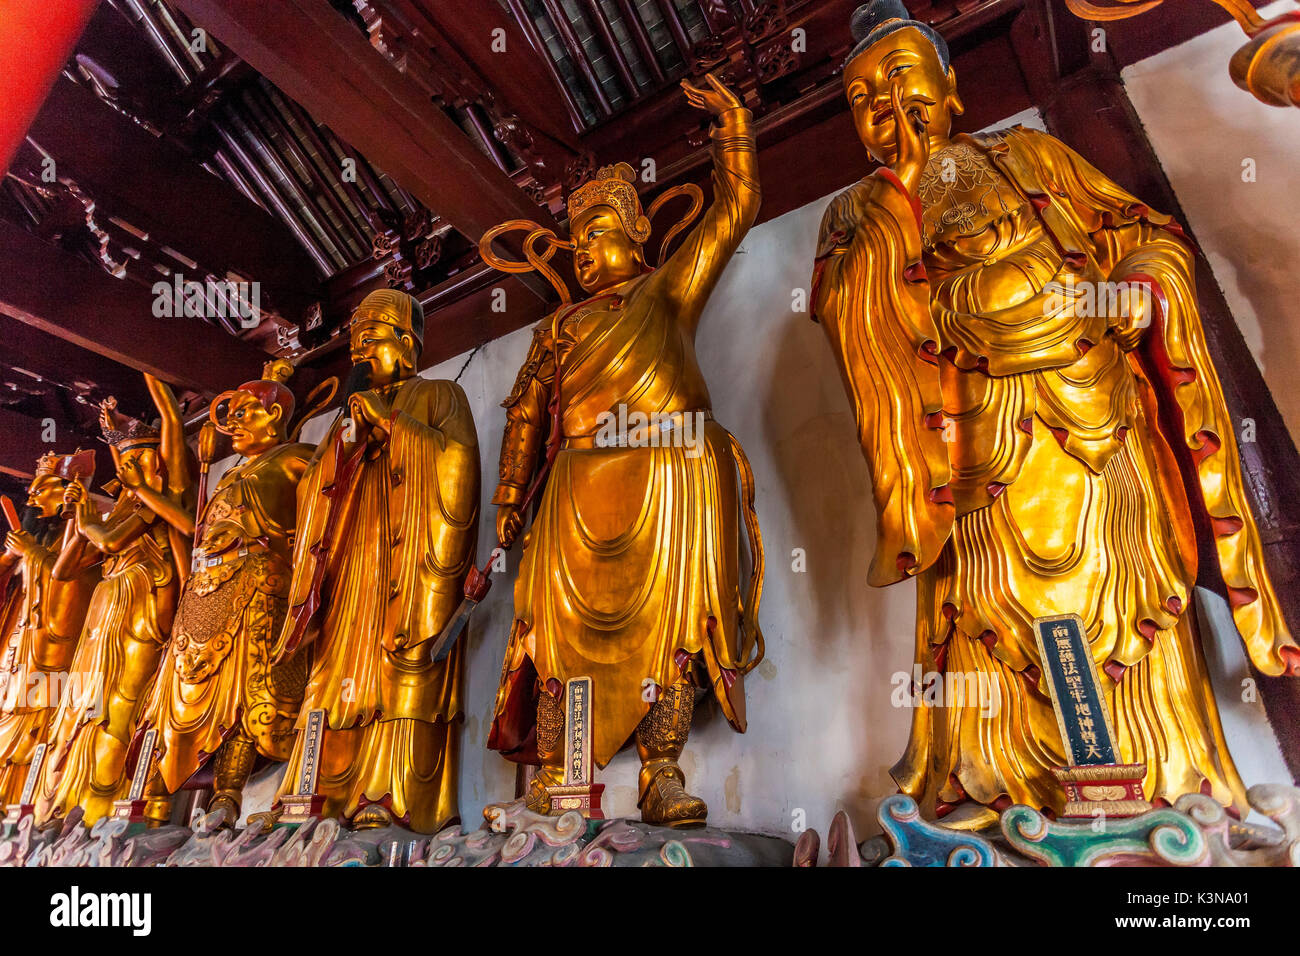 China, Shanghai, Jade Buddha Temple Stock Photo